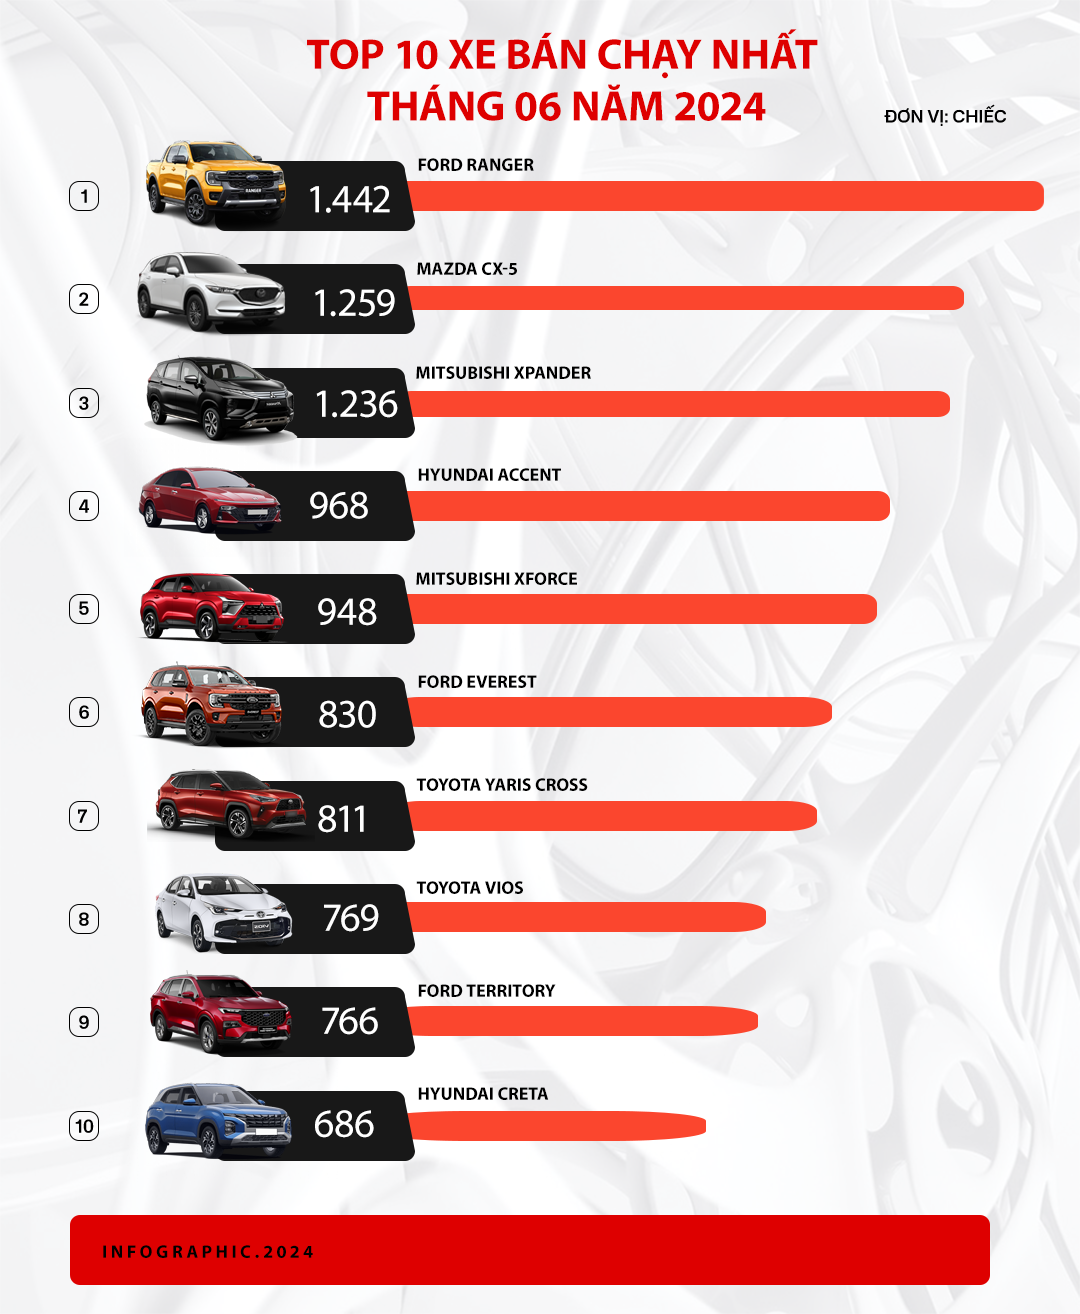 Mazda CX-5 bứt tốc, Xpander lần đầu đứng thứ 3 và những điều đáng chú ý của top 10 xe bán chạy tháng 6/2024- Ảnh 1.